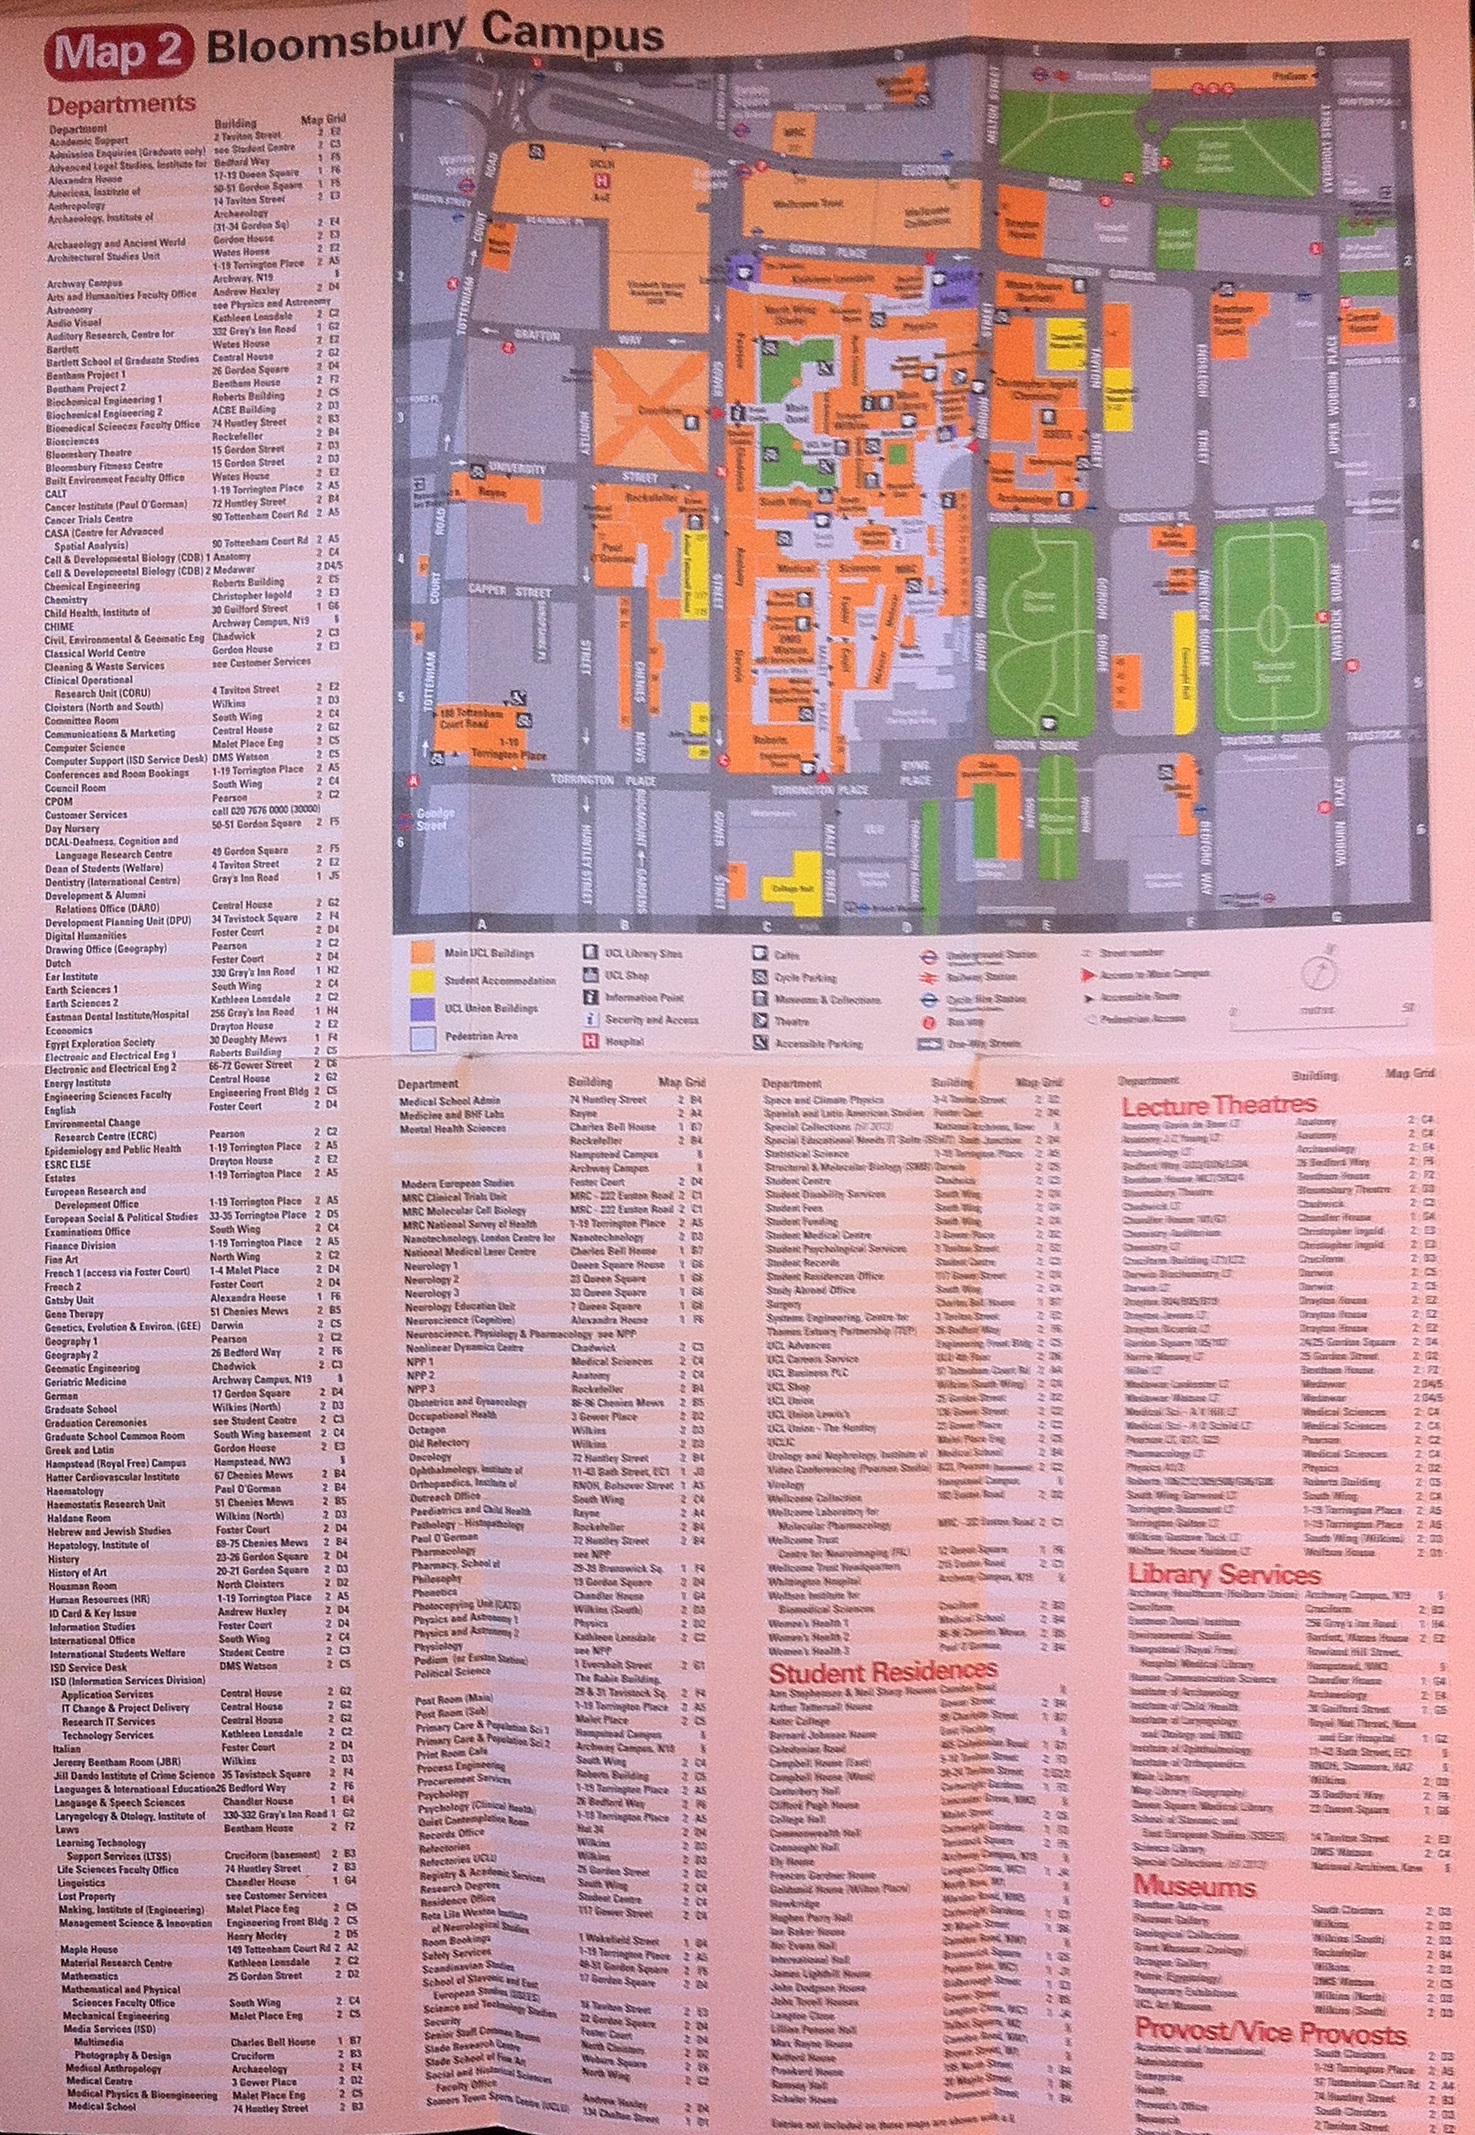 Mapa de UCL con departamentos, edificios, aulas, bibliotecas y museos.